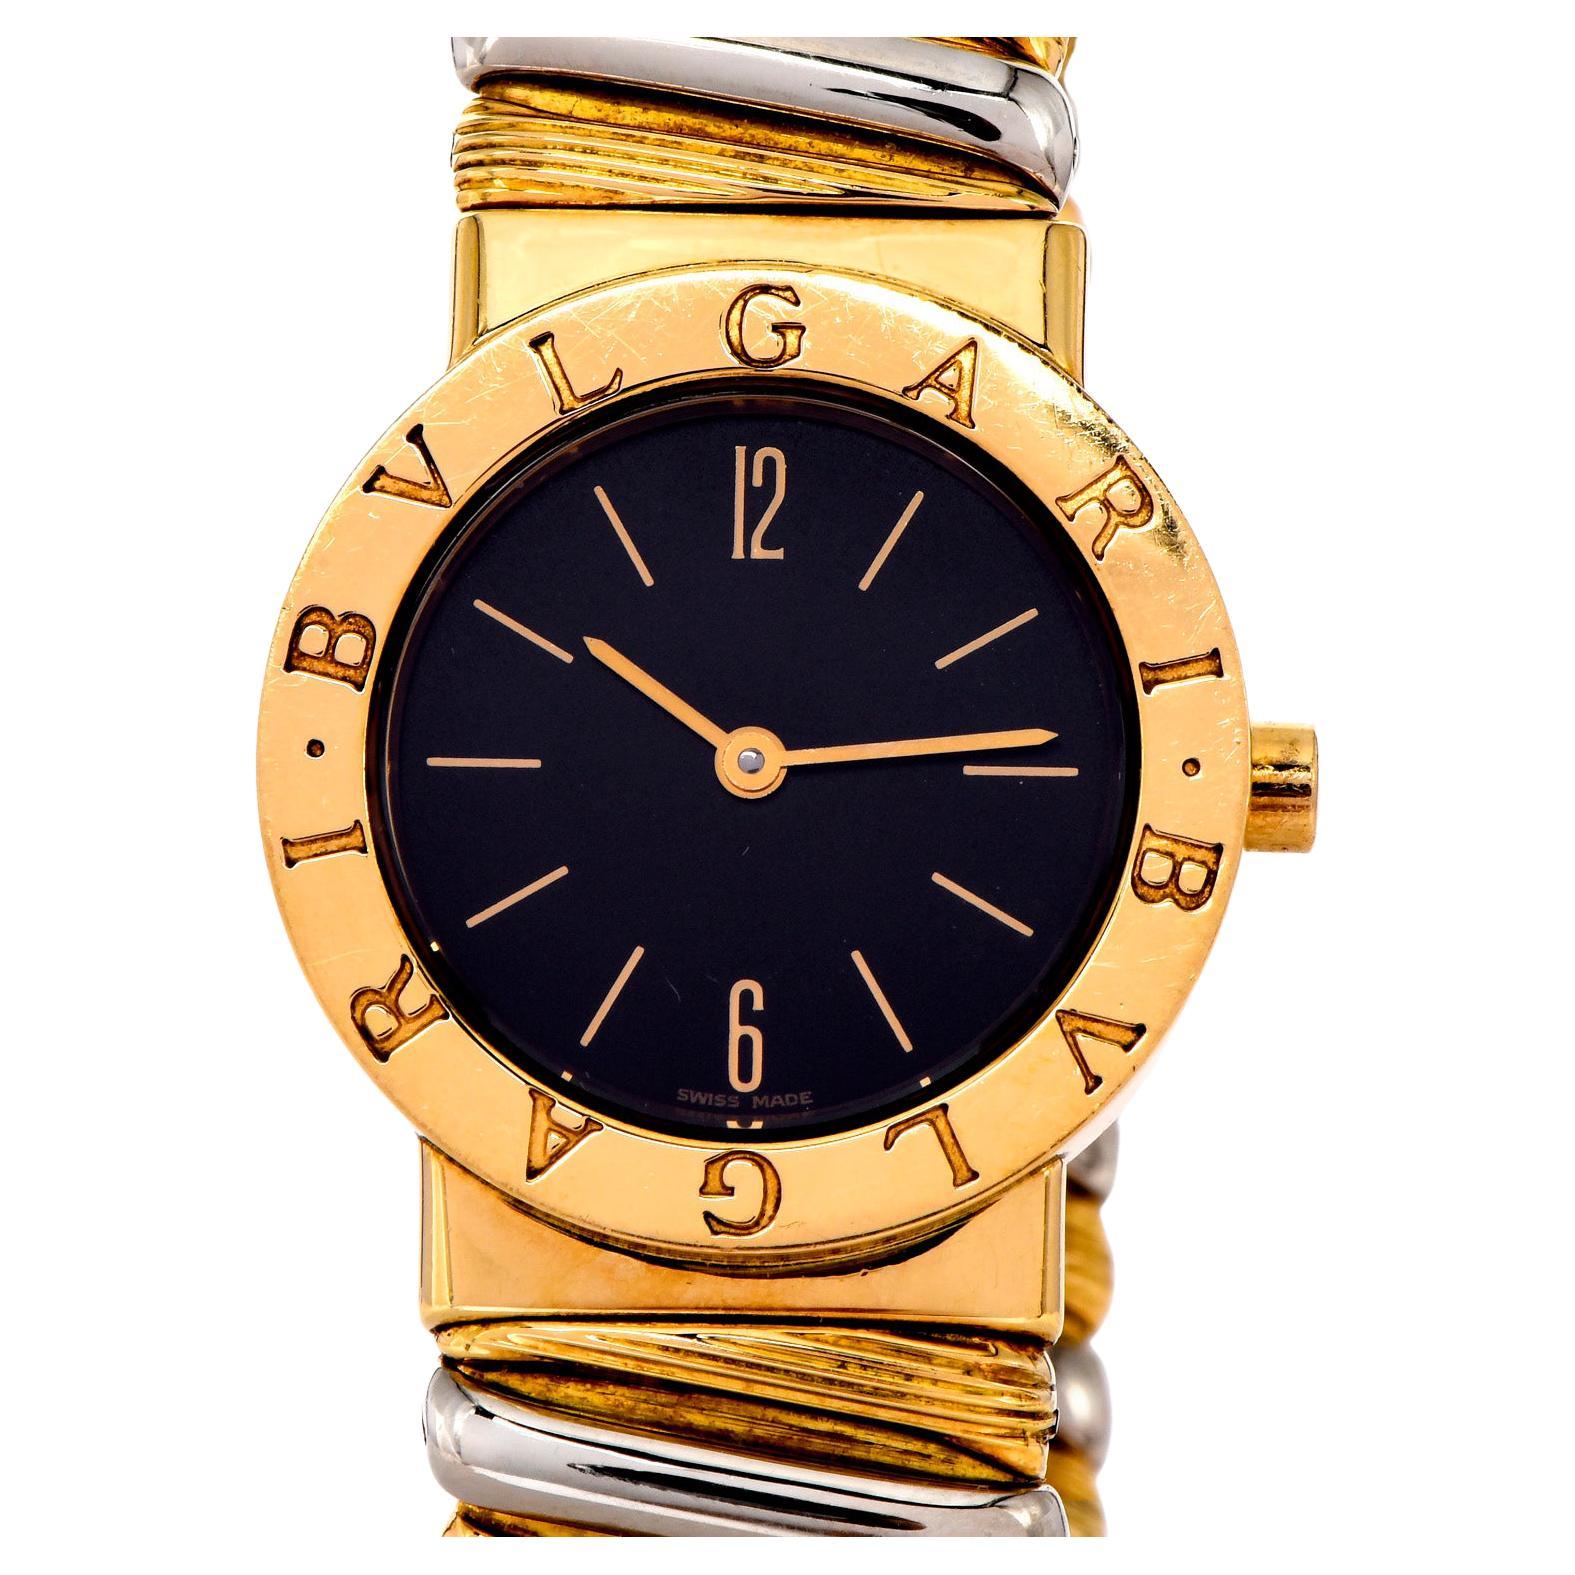 Mid-Size Vintage Damen Bvlgari Bulgari Tubogas Uhr in 18k Gelb & Weißgold, ein zeitloses begehrtes Meisterwerk, perfekt für den täglichen Gebrauch.
Sie hat ein wunderschönes schwarzes Zifferblatt mit goldenen Ziffernmarkierungen. Uhr, Zifferblatt,